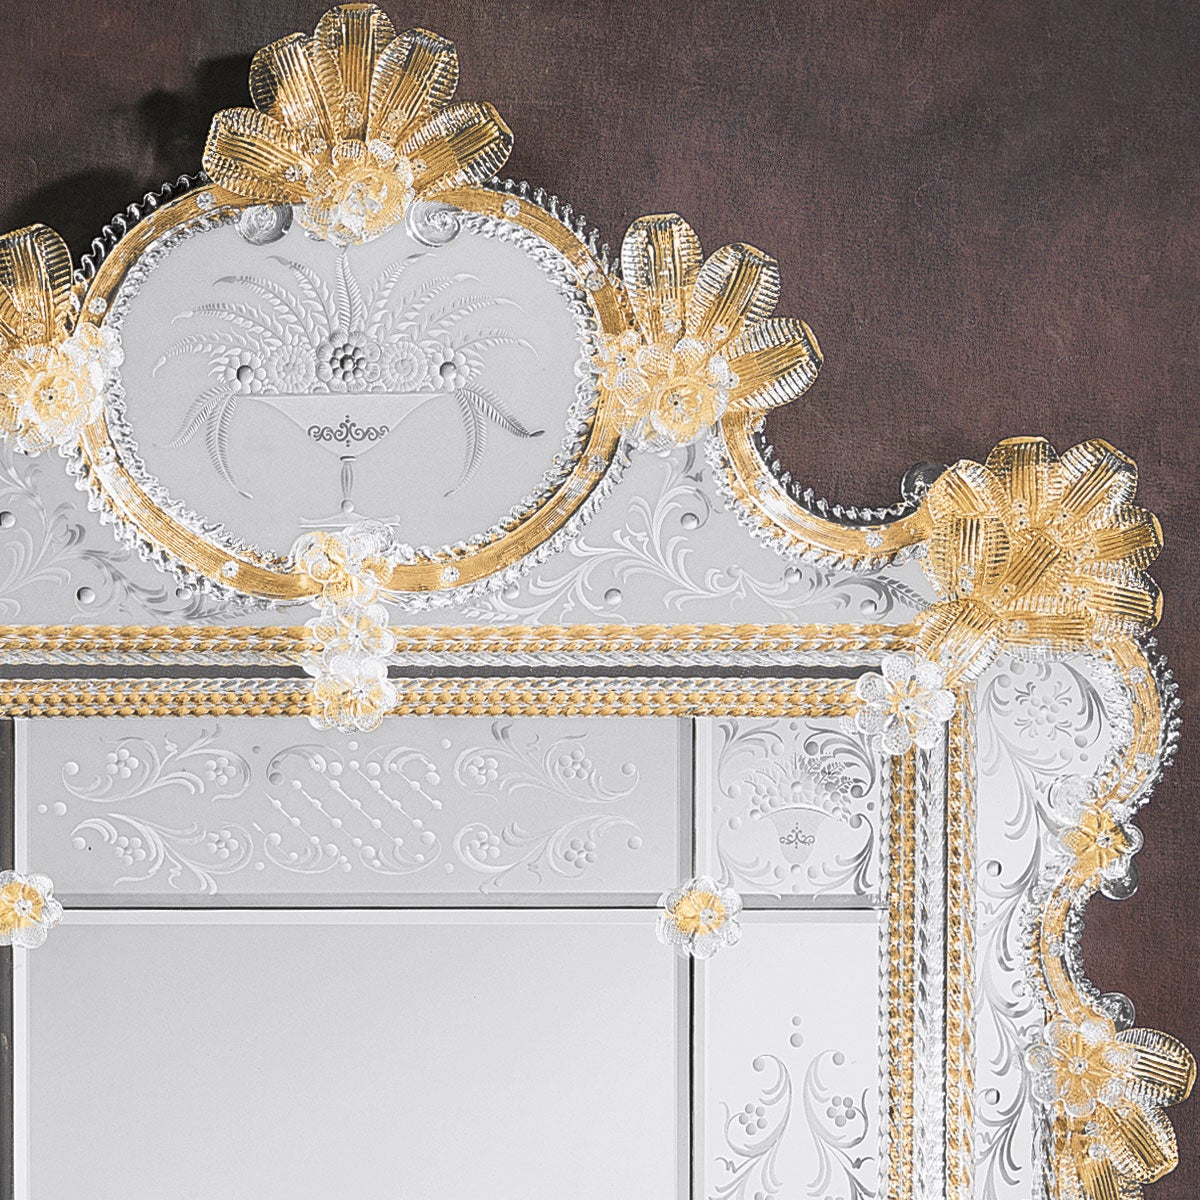 Un luxueux miroir de style vénitien en verre de Murano.
Réalisé par les mains expertes des maîtres verriers de Murano, avec un cadre formé de tiges et de boucles de cristal sur un fond d'or avec des garnitures de feuilles, de roses et de fleurs en